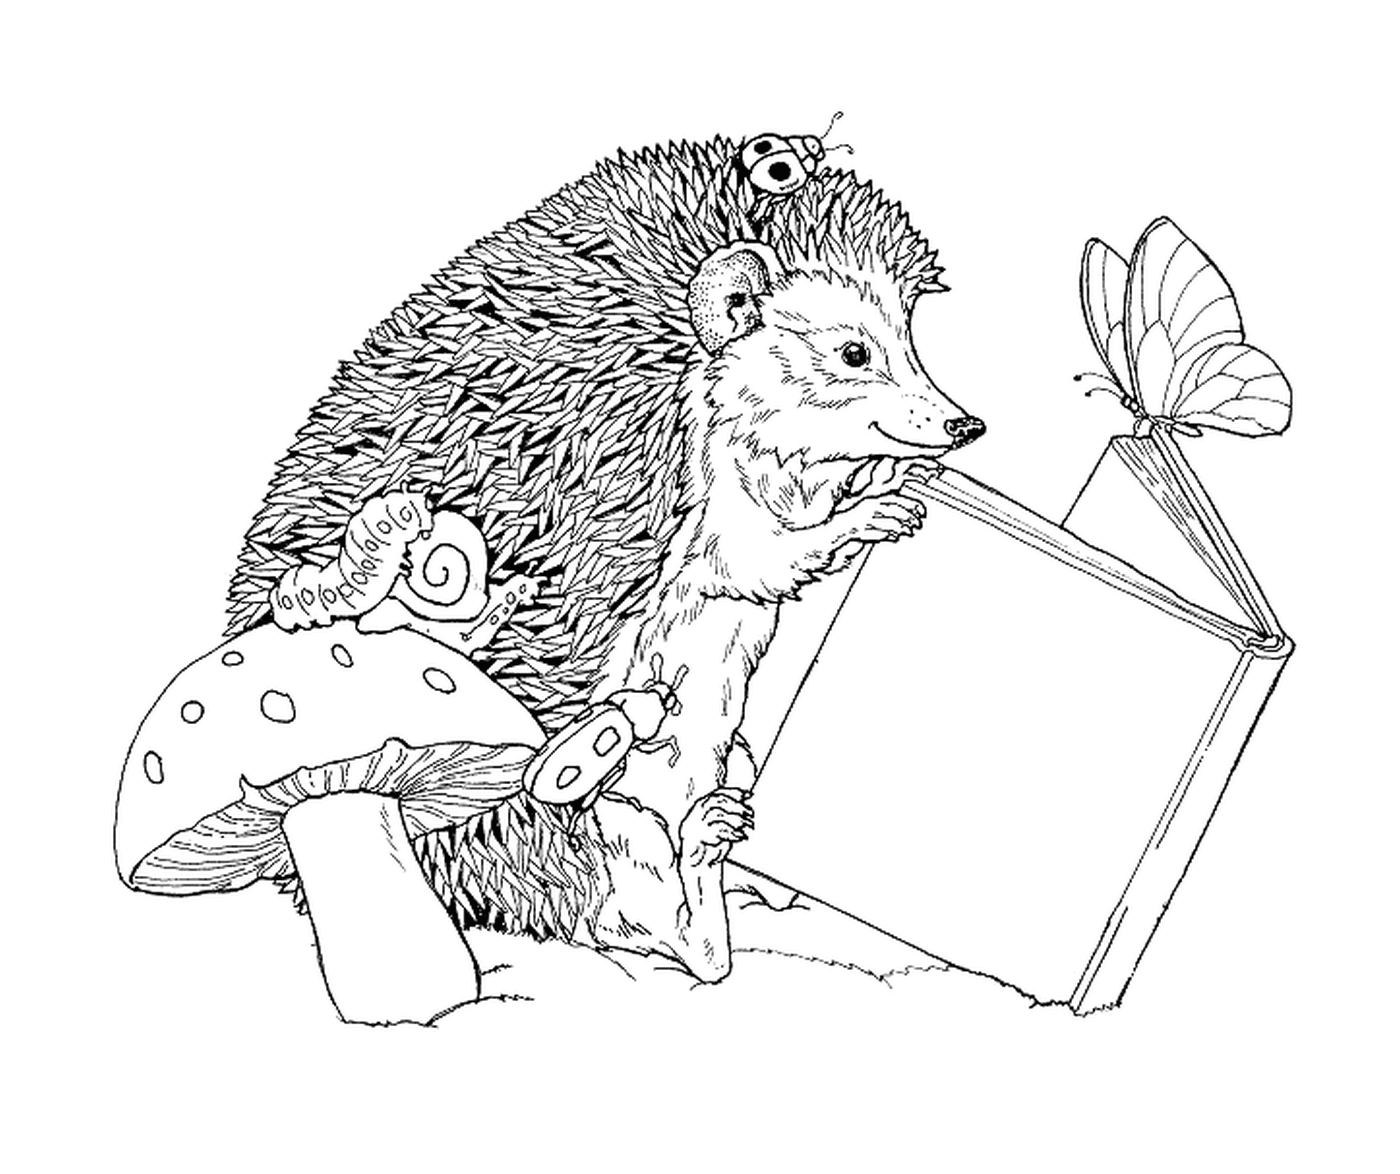  Hedgehog reading a book next to a mushroom 